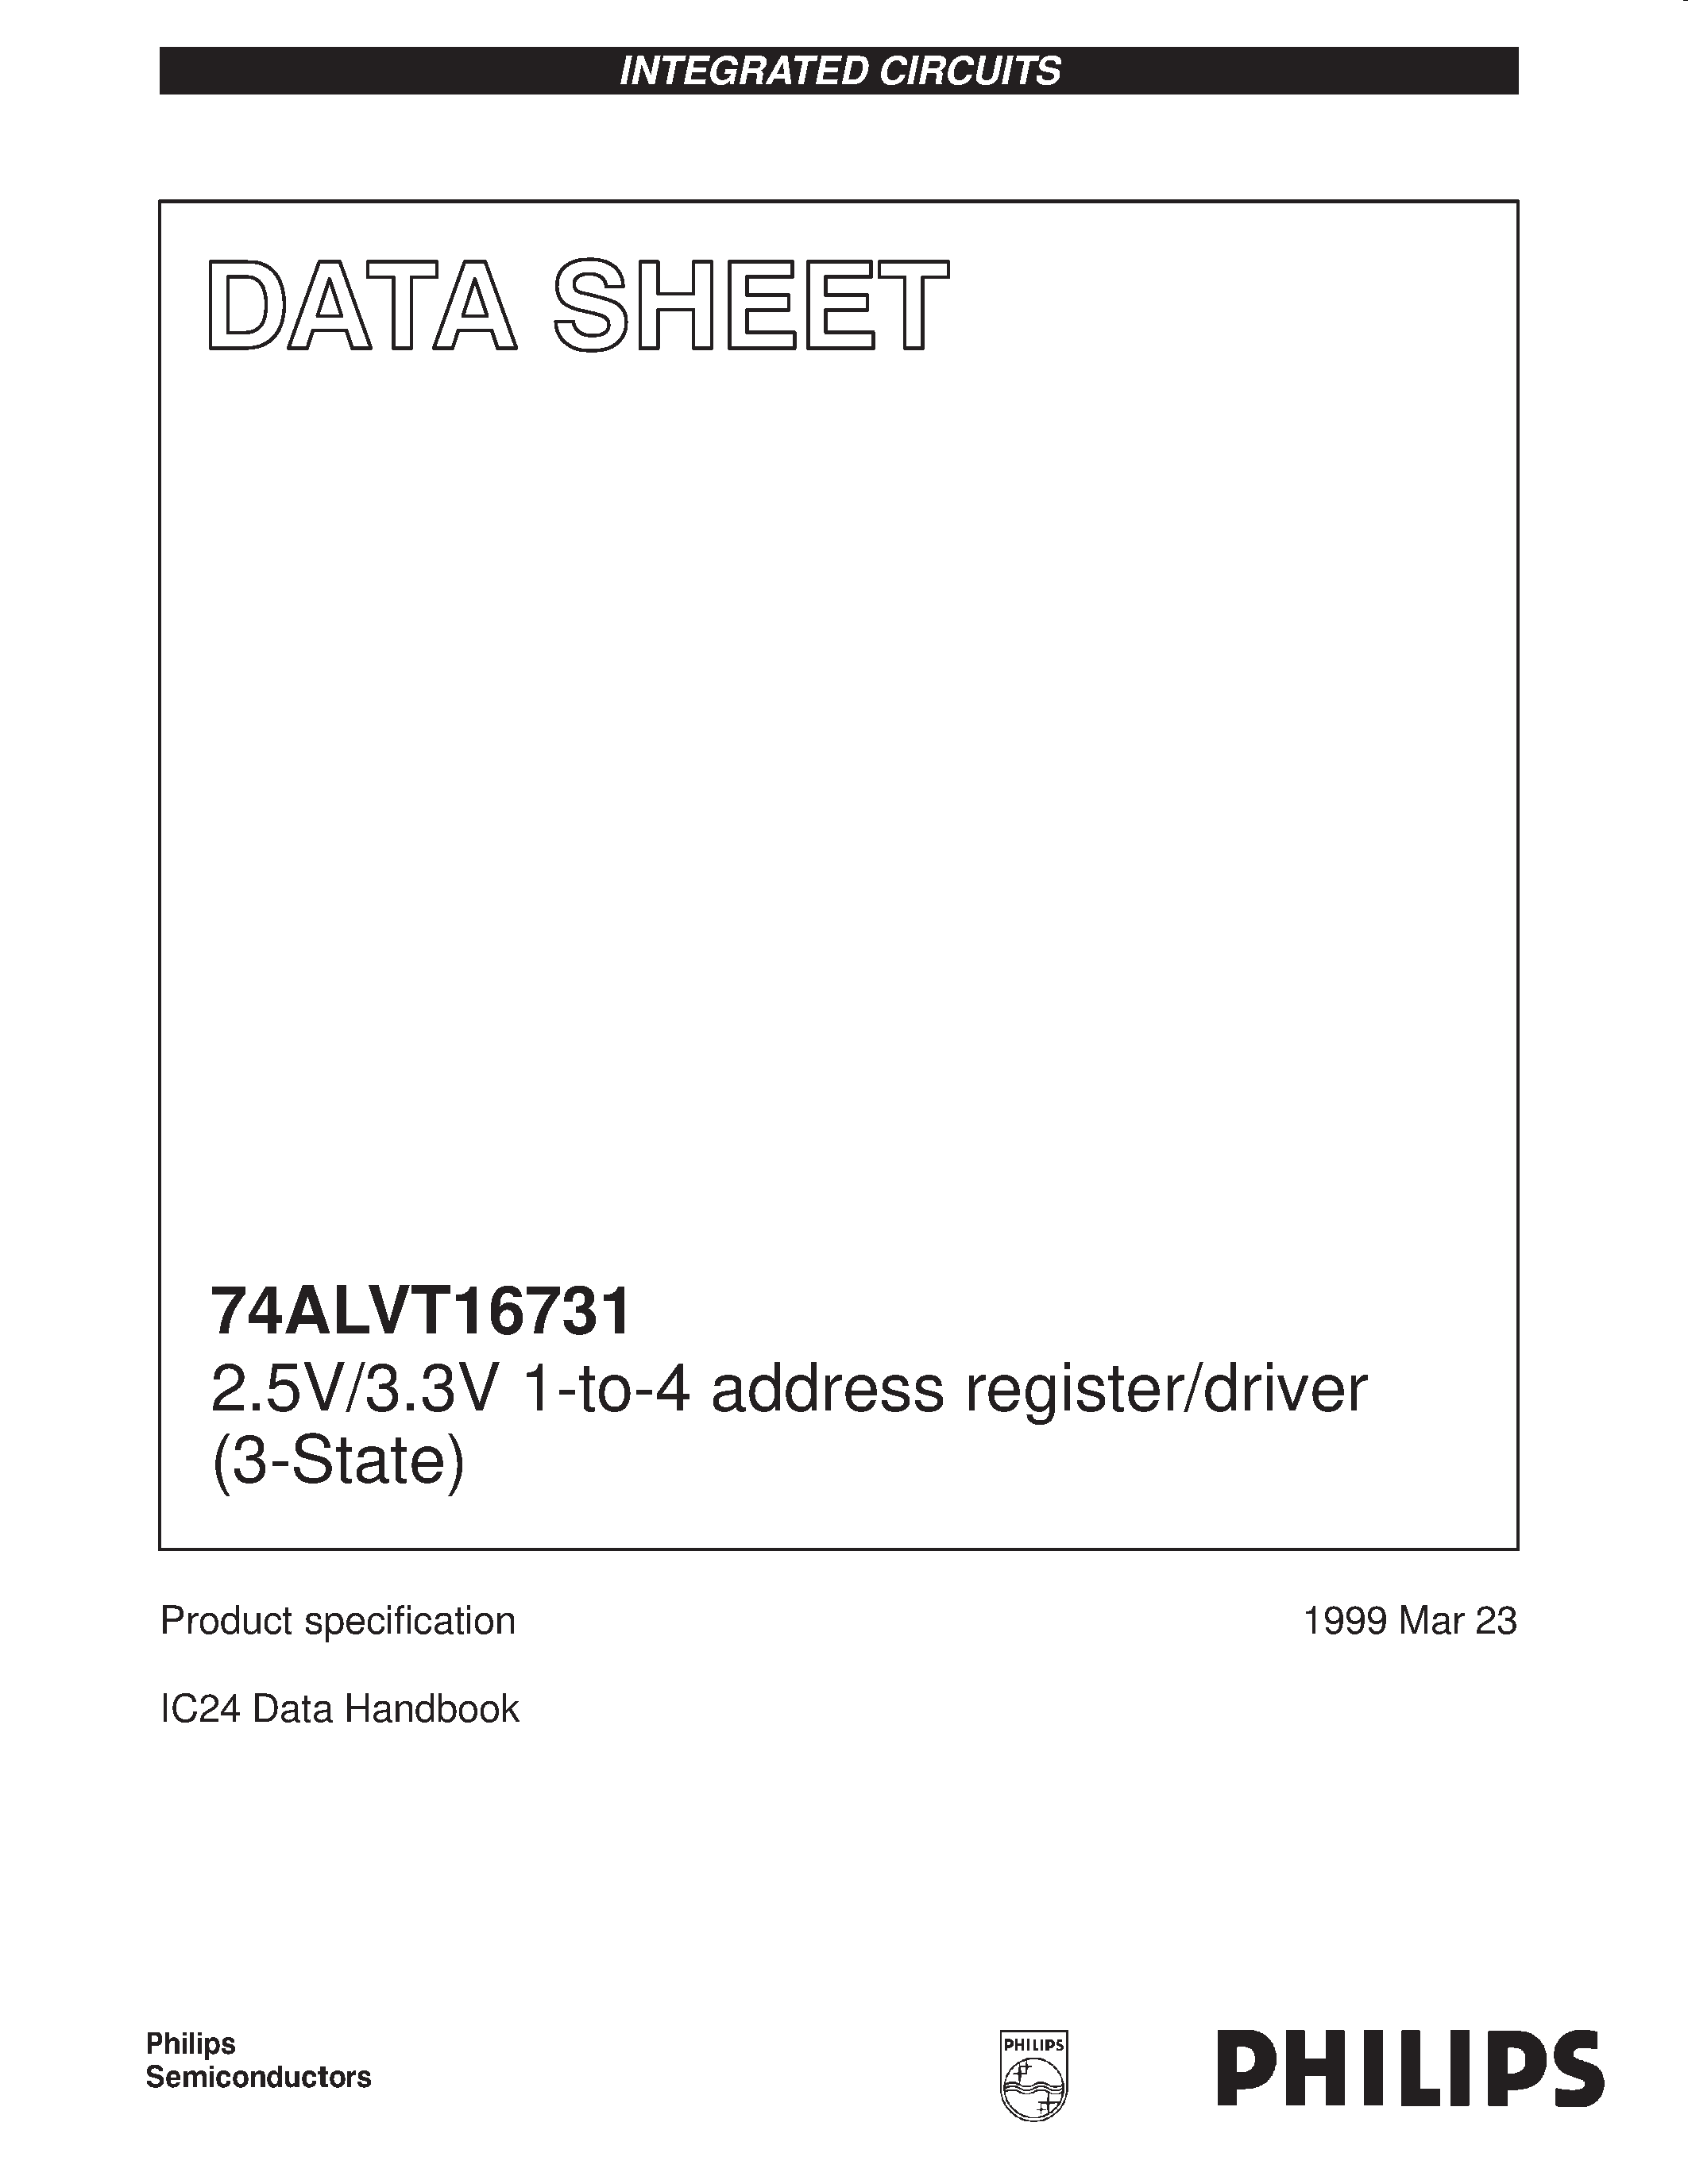 Datasheet 74ALVT16731DL - 2.5V/3.3V 1-to-4 address register/driver 3-State page 1